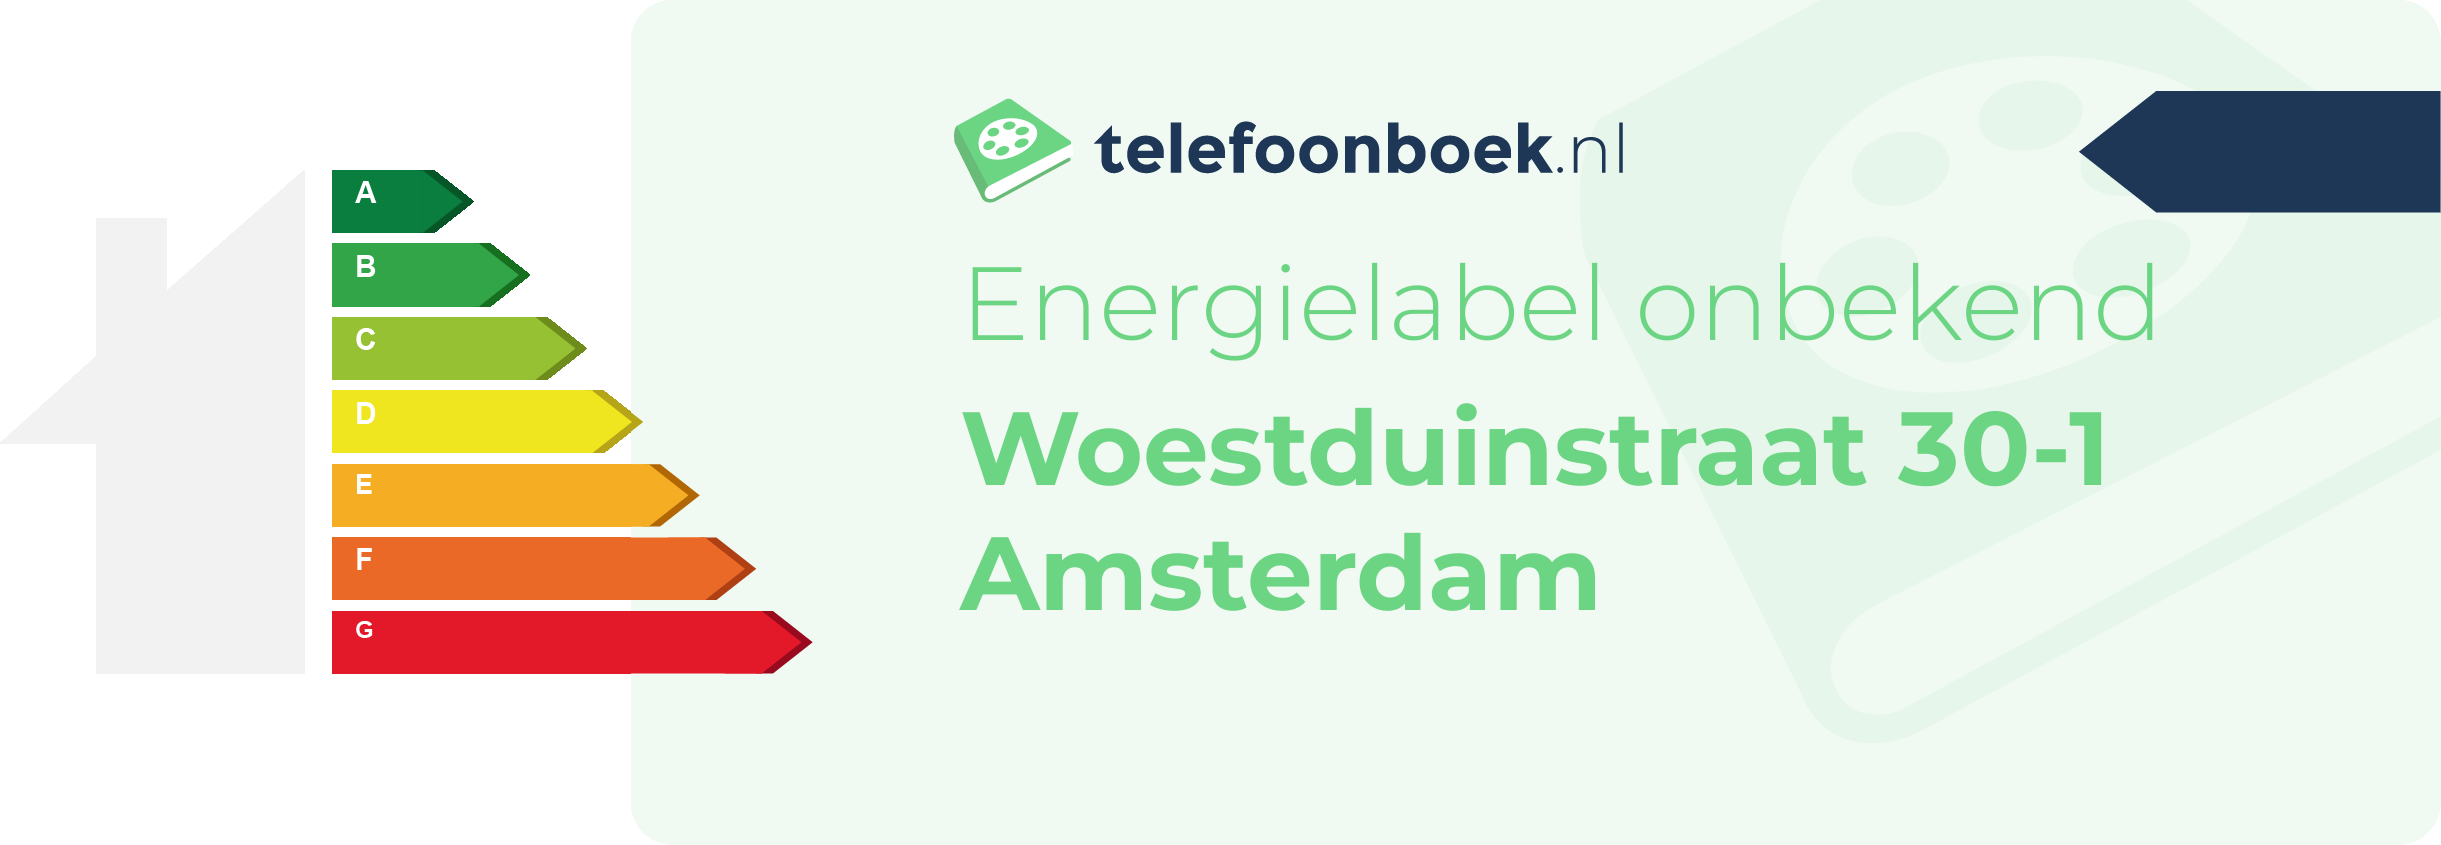 Energielabel Woestduinstraat 30-1 Amsterdam